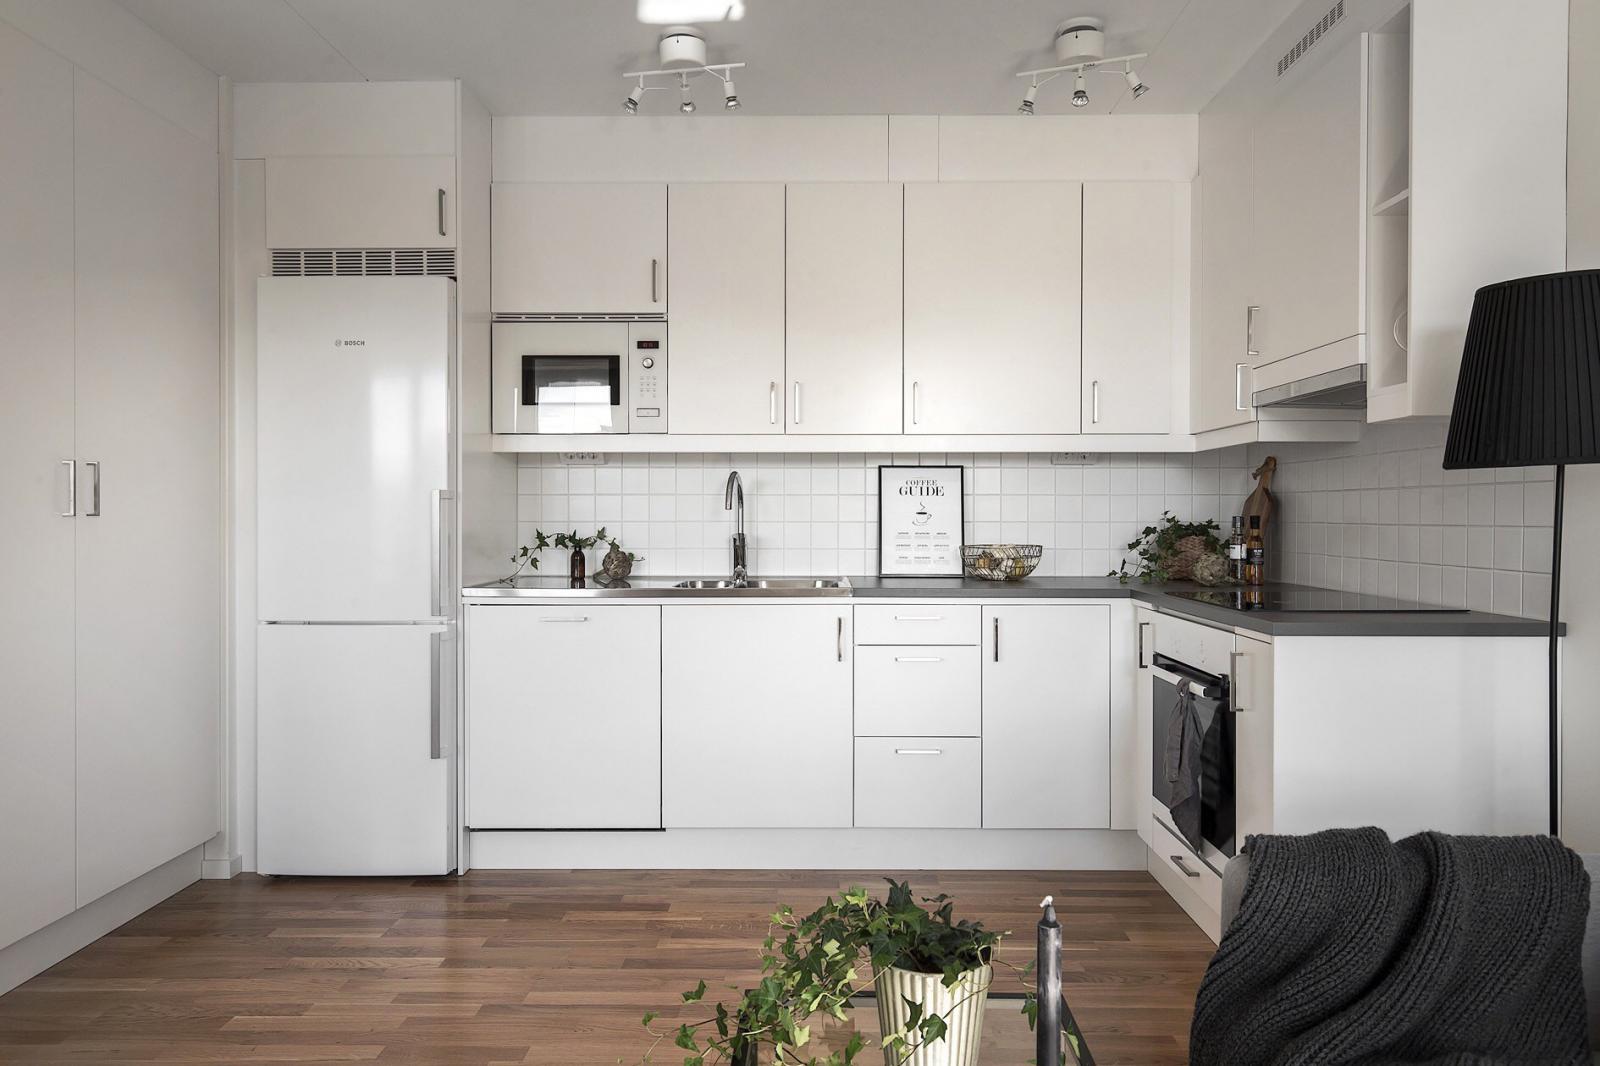 Hình ảnh hệ tủ chữ L màu trắng tinh khôi như hòa lẫn vào không gian tổng thể, nơi lưu trữ thiết bị nấu nướng, vật dụng phòng bếp.